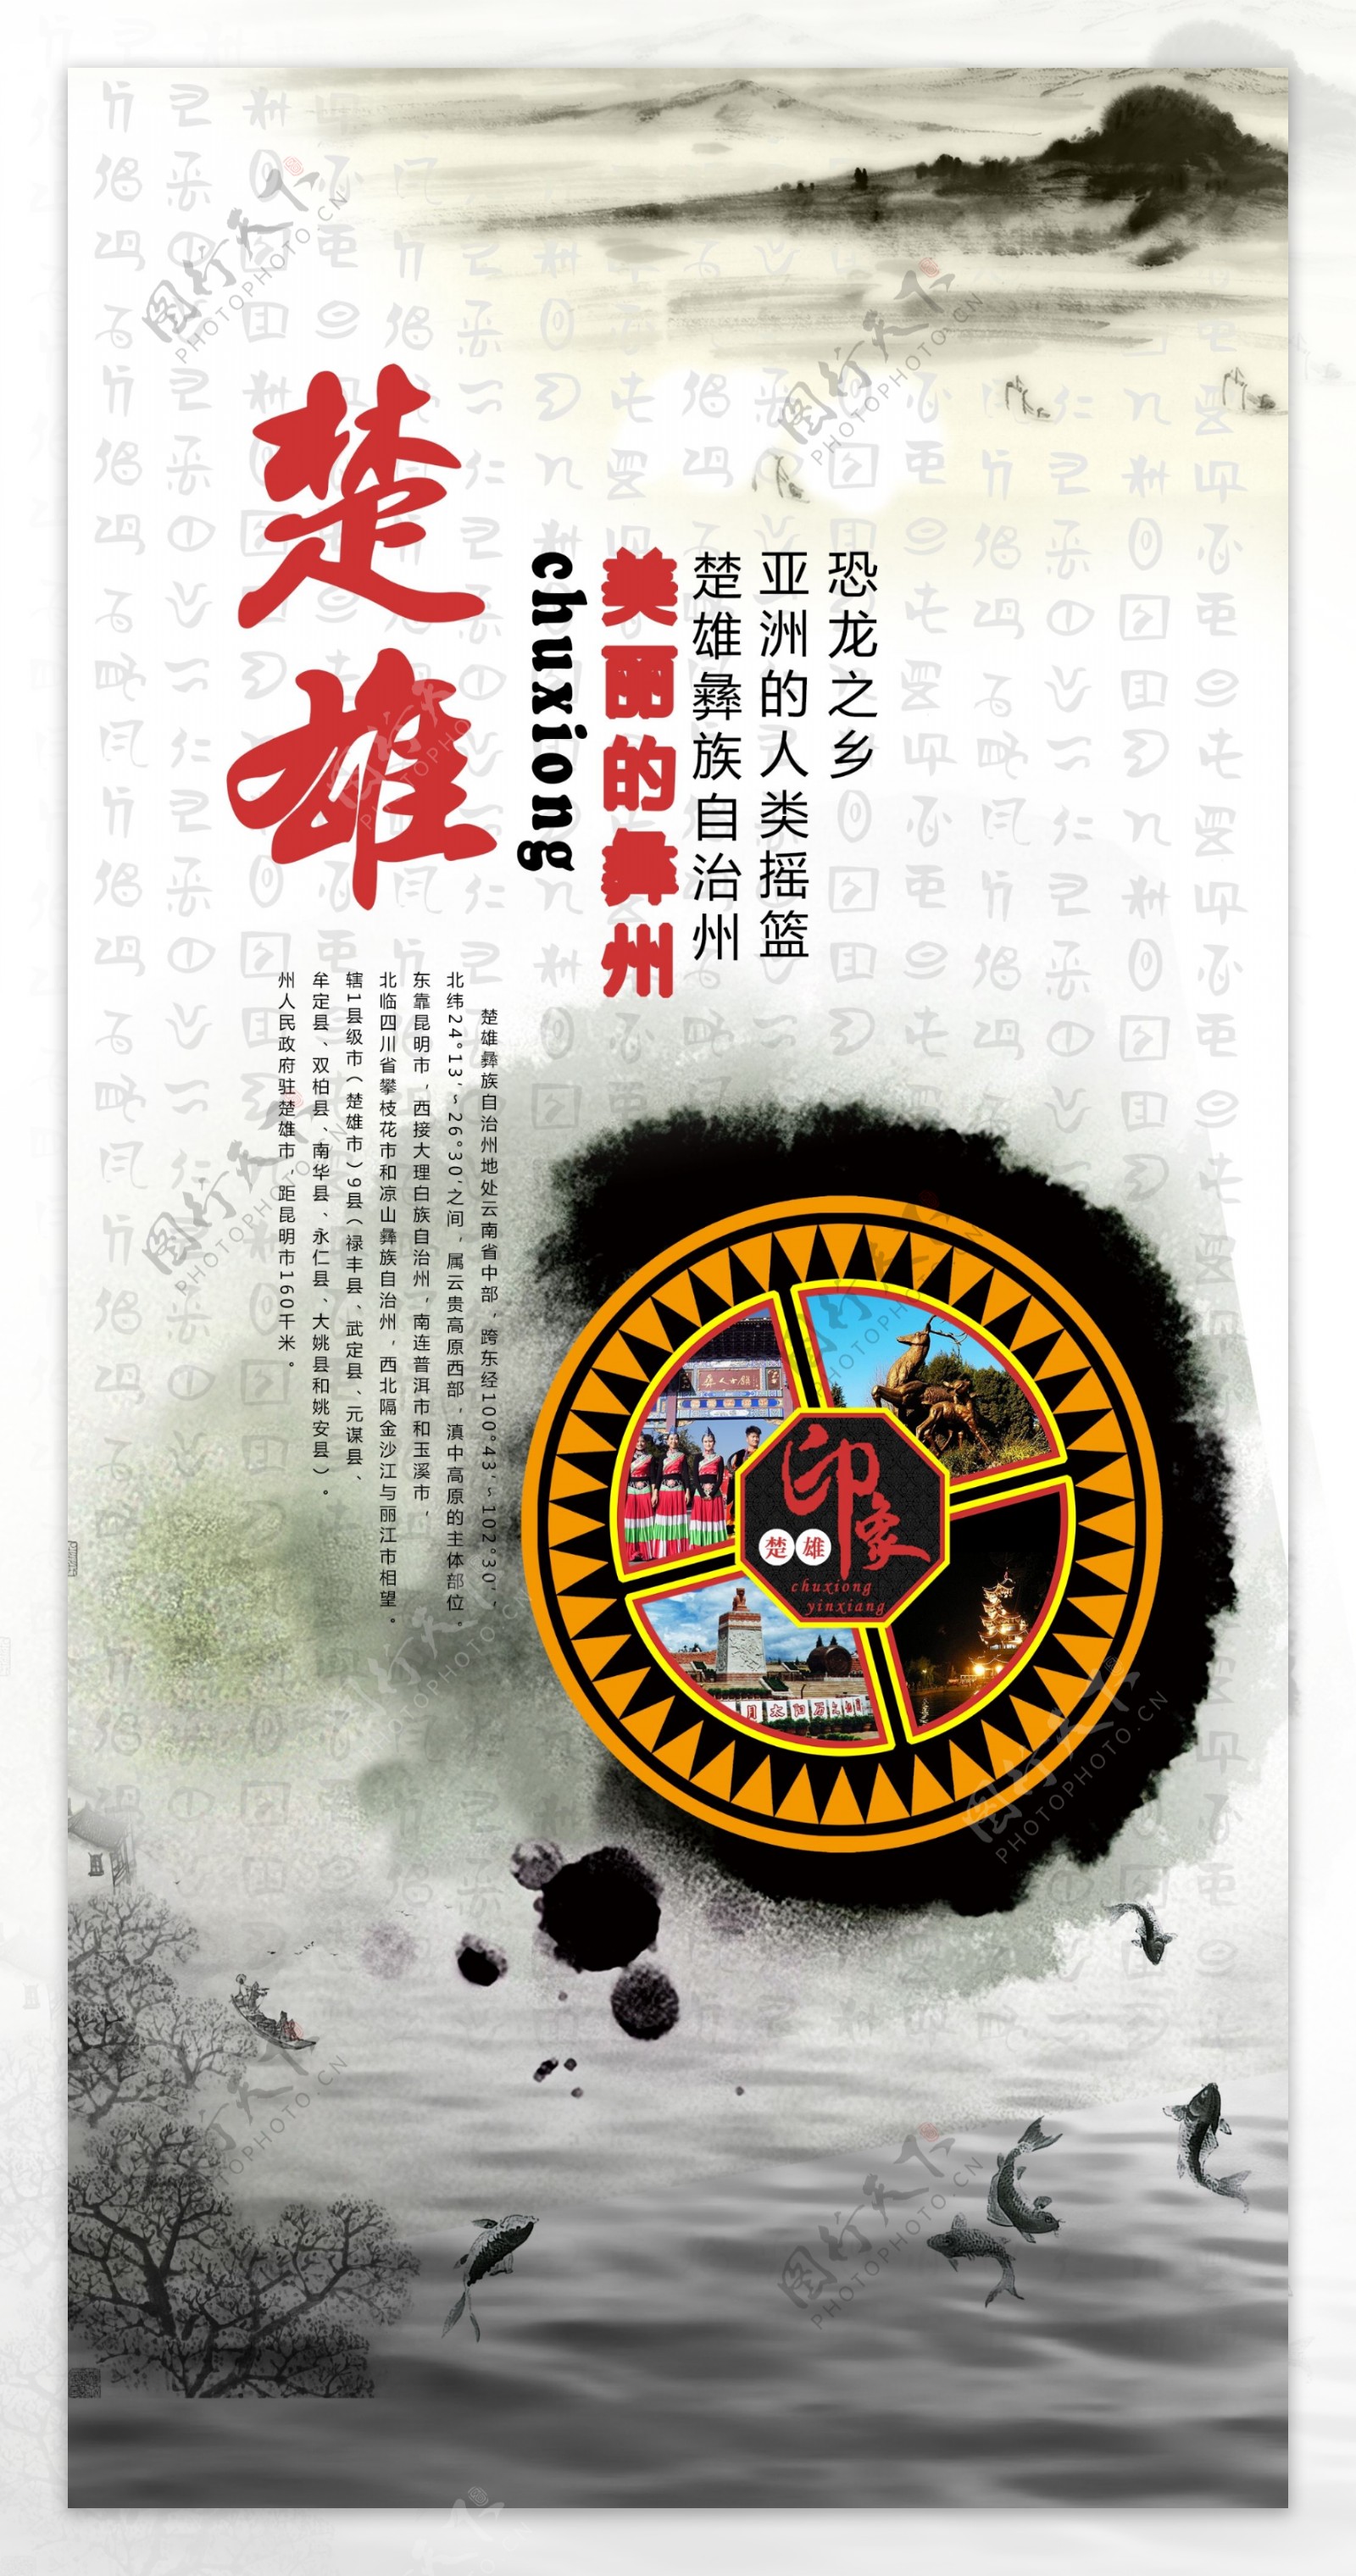 彝族文化宣传海报